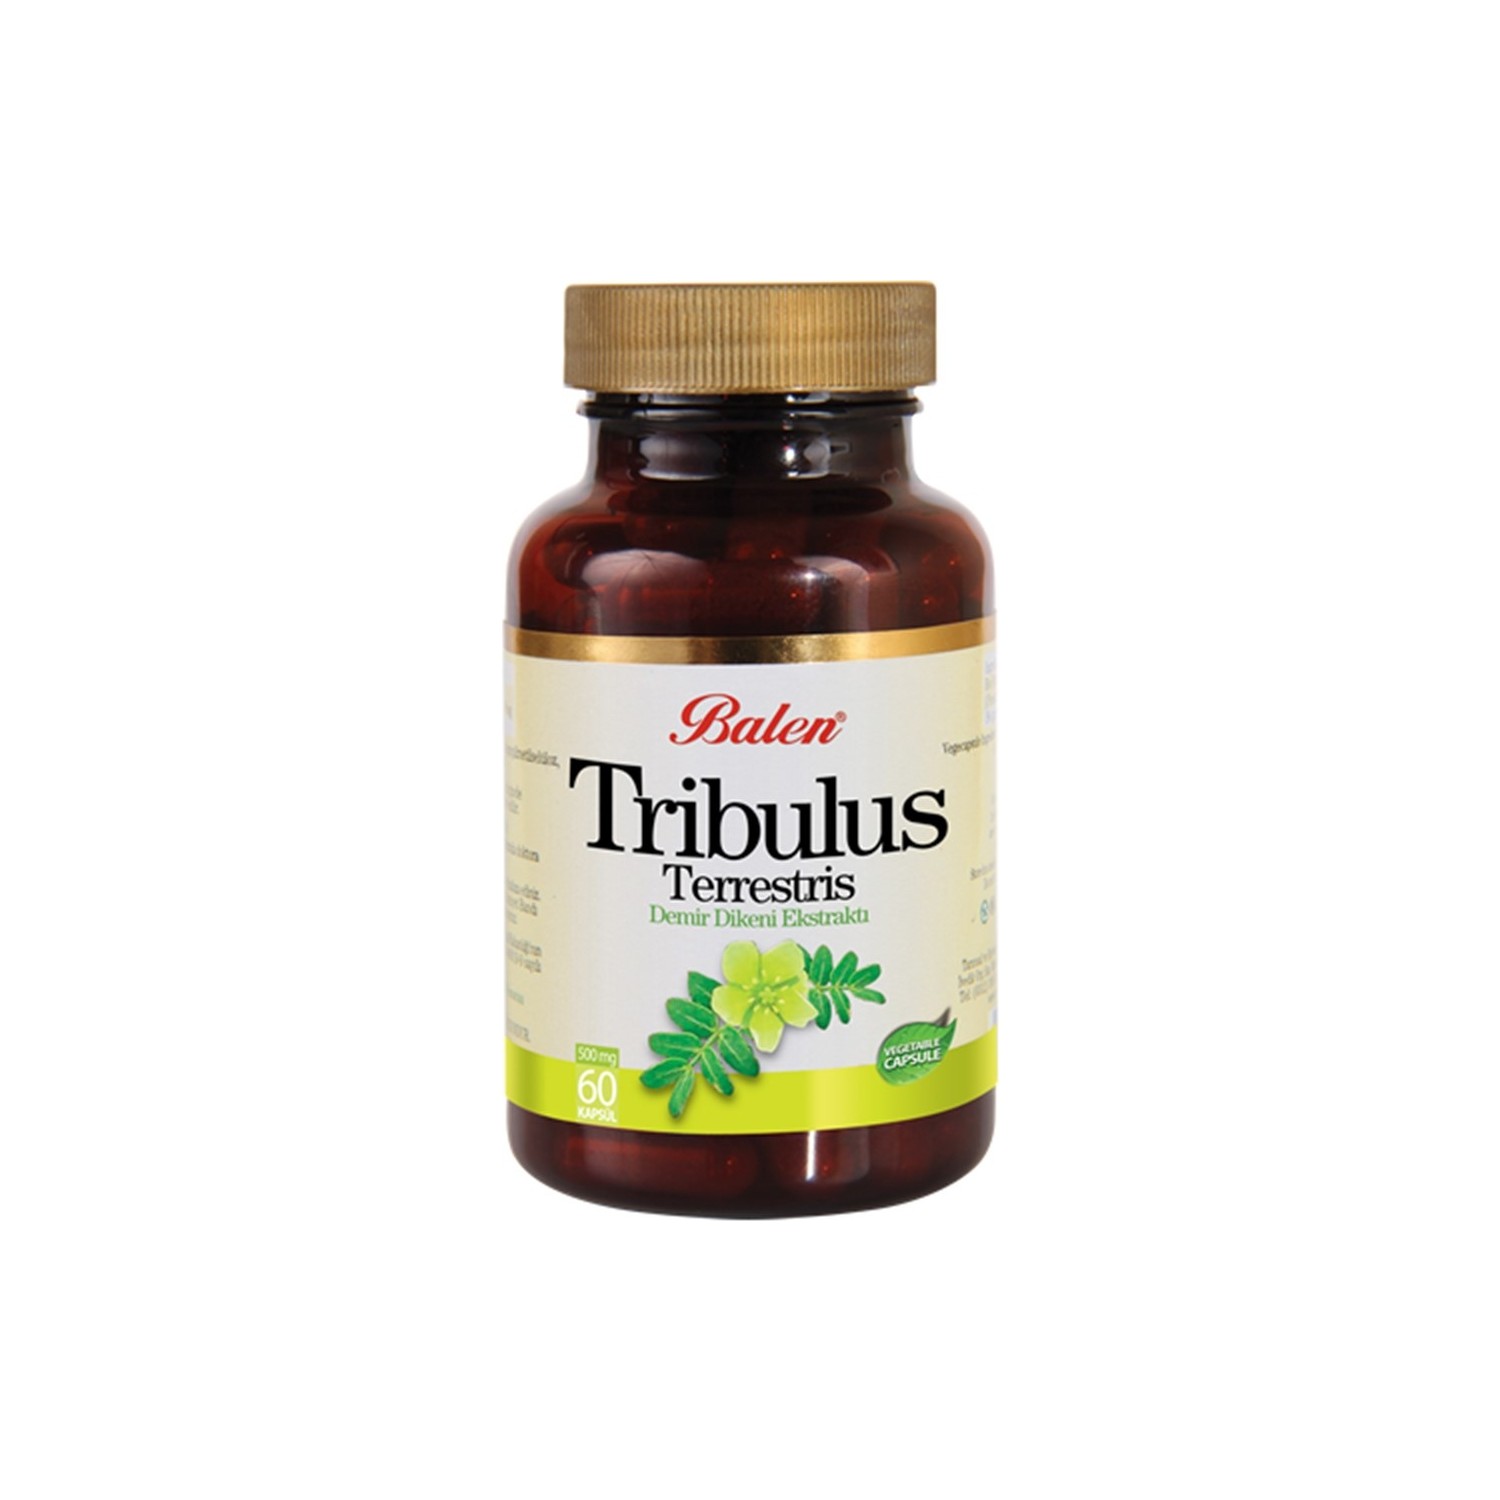 Пищевая добавка Balen Tribulus Terrestris 620 мг, 60 капсул пищевая добавка balen tribulus terrestris 500 мг 2 упаковки по 60 капсул